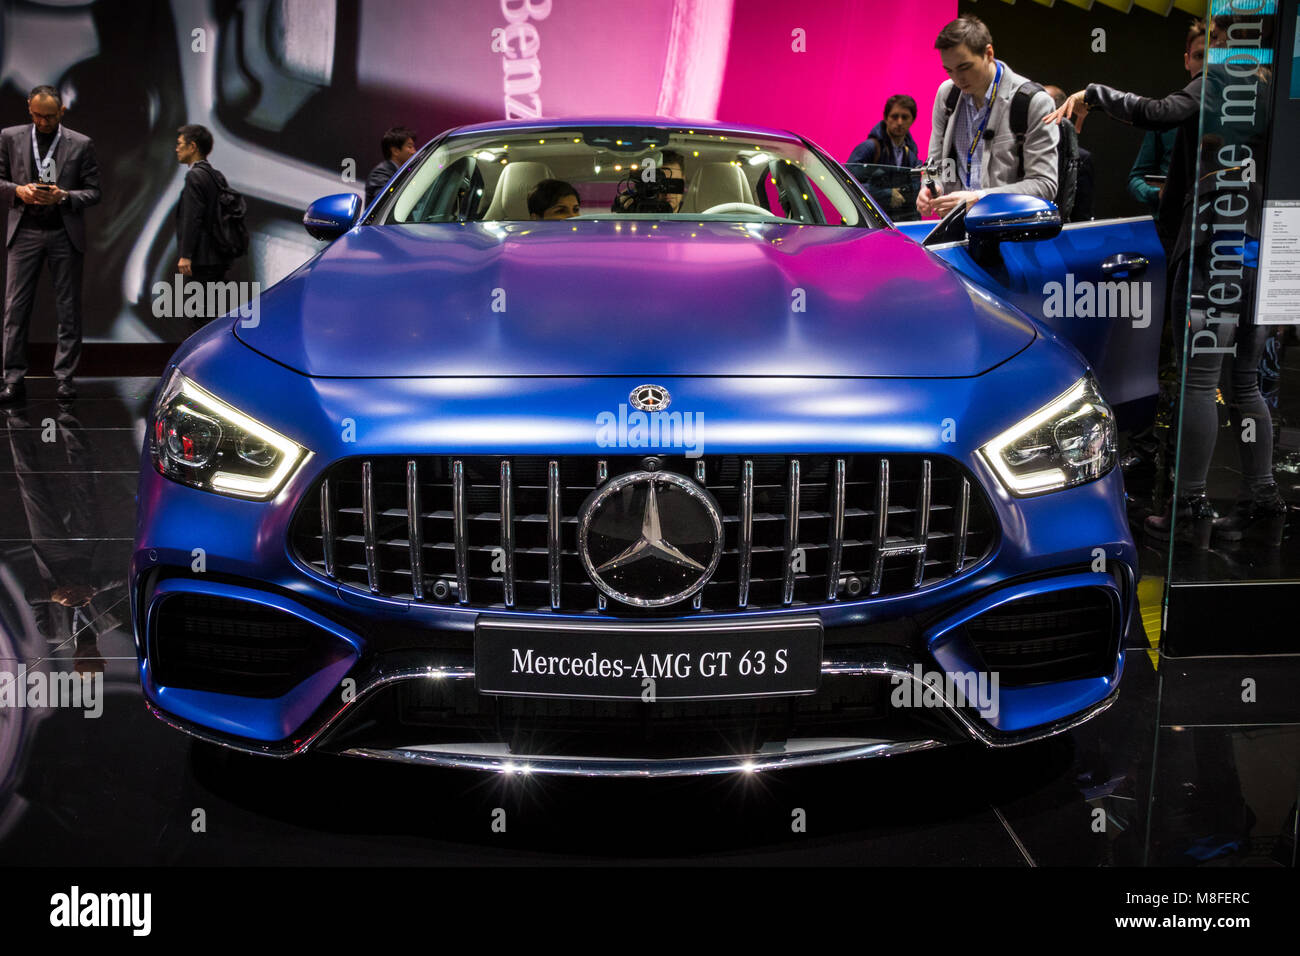 Genf, Schweiz - 7. MÄRZ 2018: Neue 2019 Mercedes AMG GT 63 S Coupé Auto auf  dem 88. Internationalen Automobilsalon in Genf präsentiert Stockfotografie  - Alamy